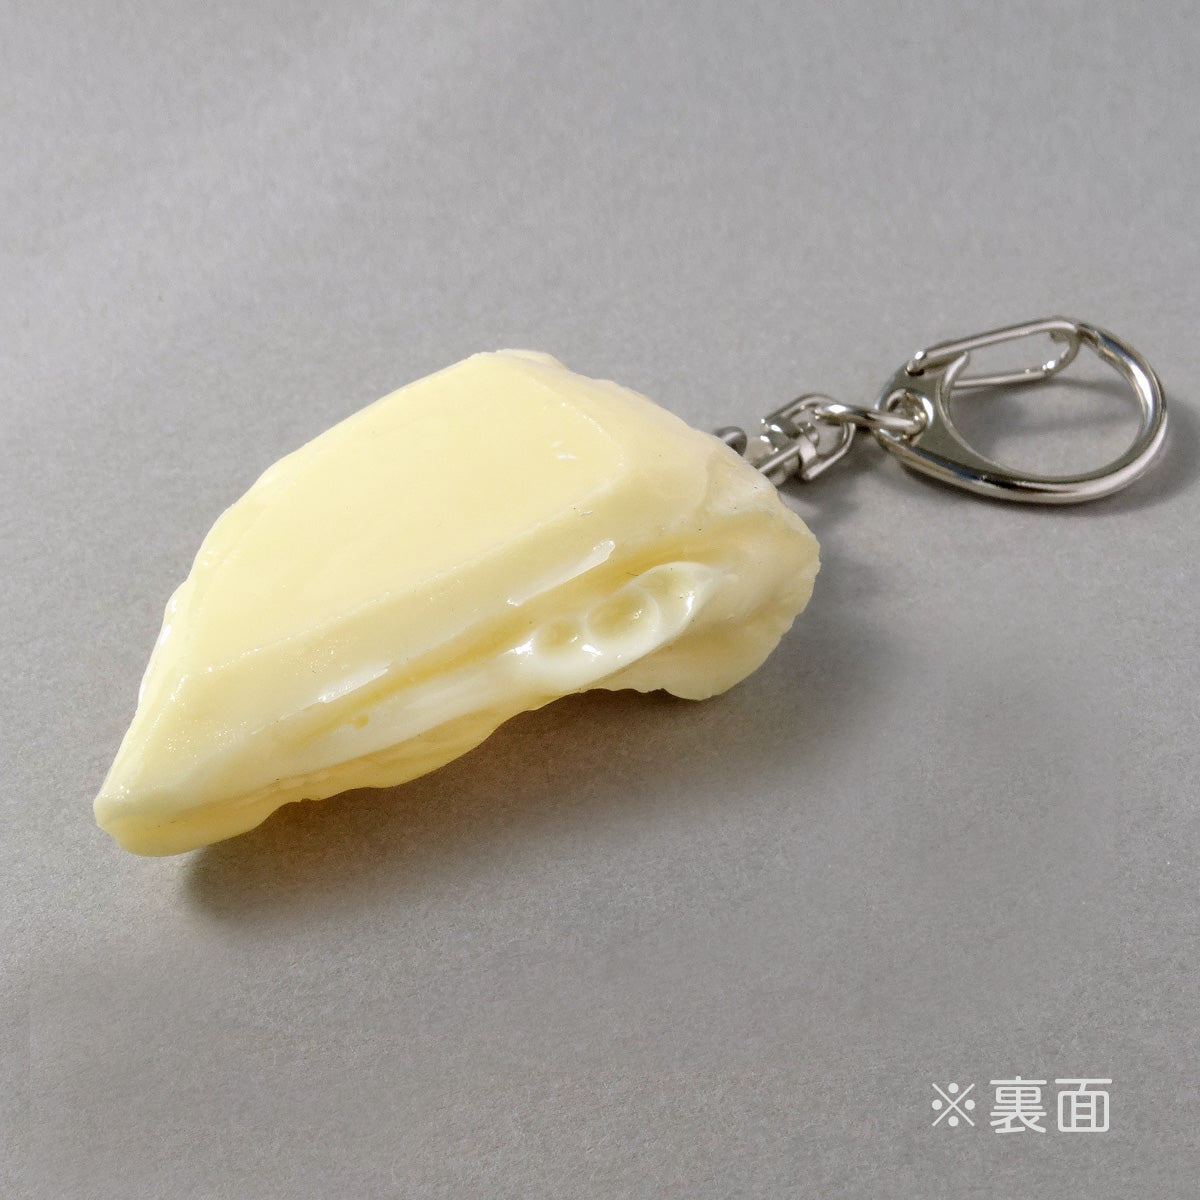 食品サンプル(IWASAKI)「カマンベールチーズのキーリング 」の裏面の商品画像です。